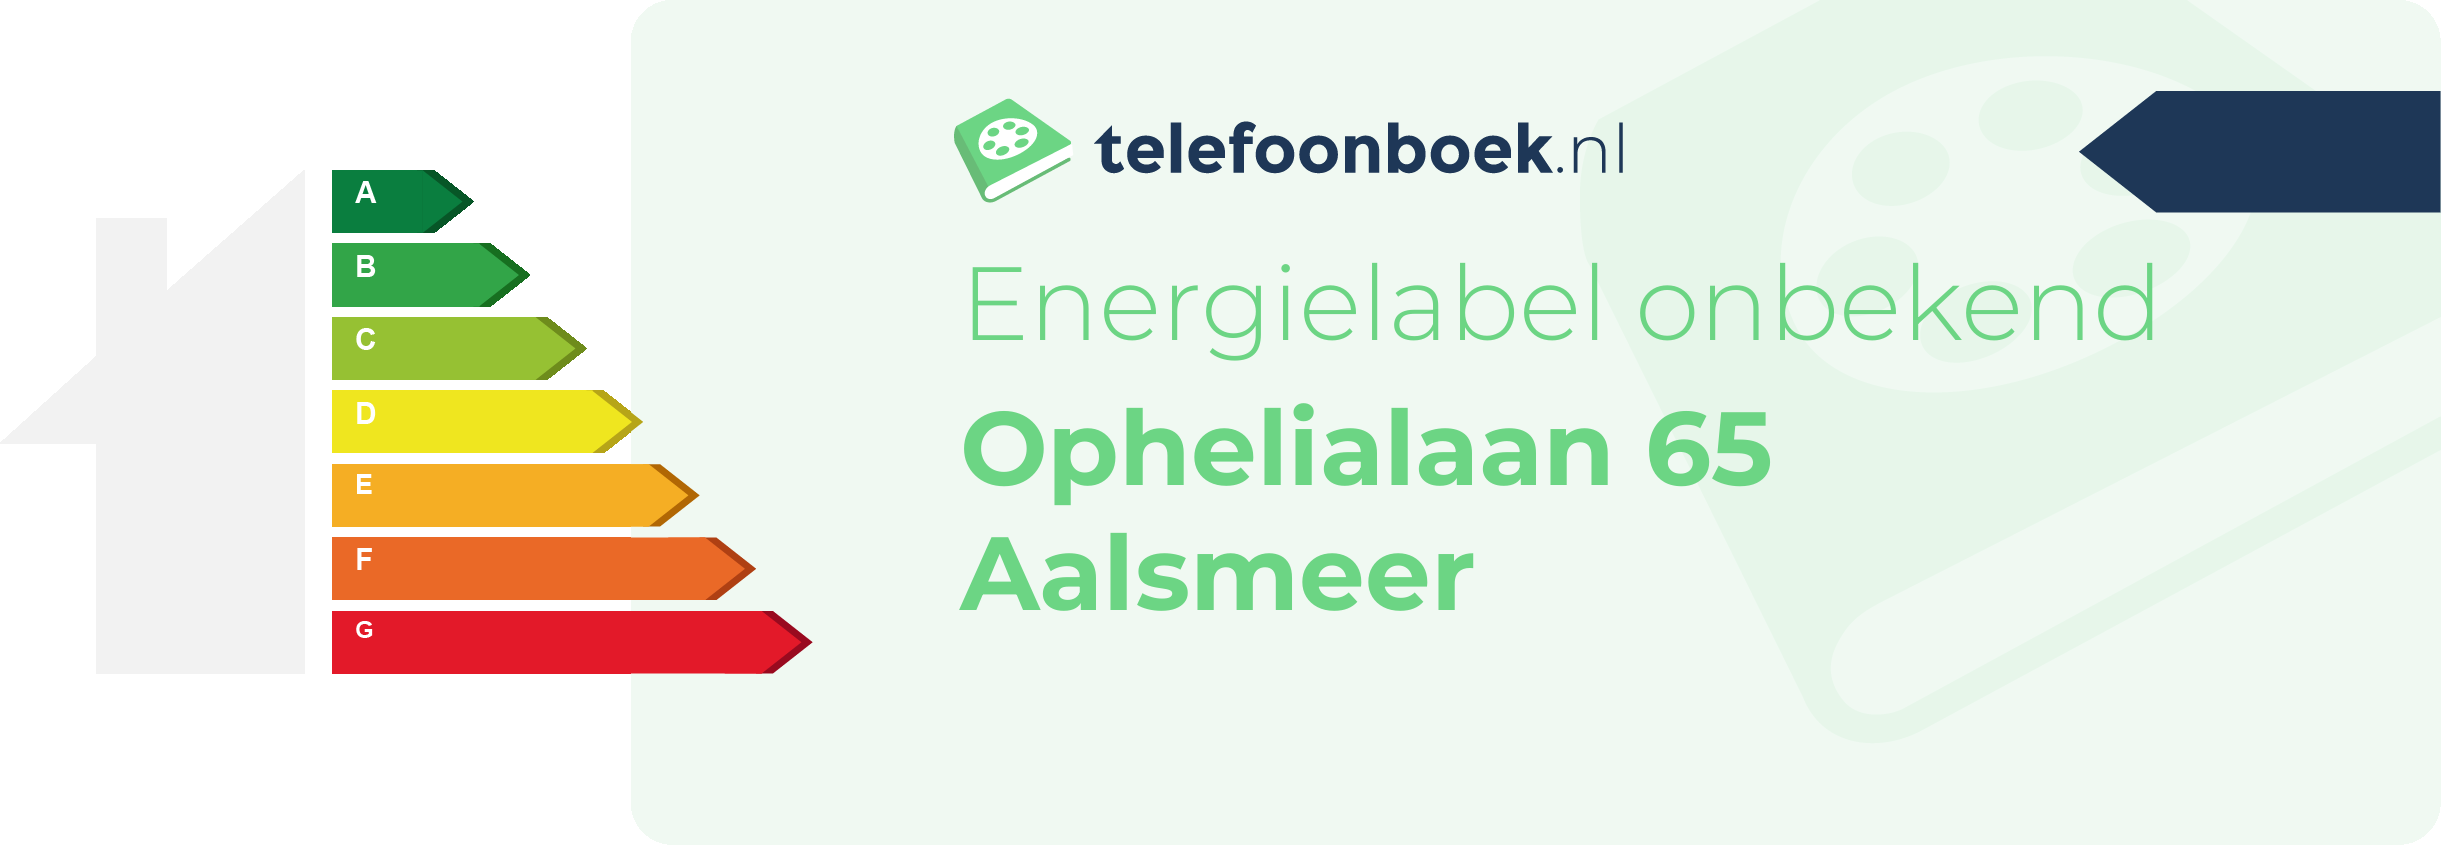 Energielabel Ophelialaan 65 Aalsmeer